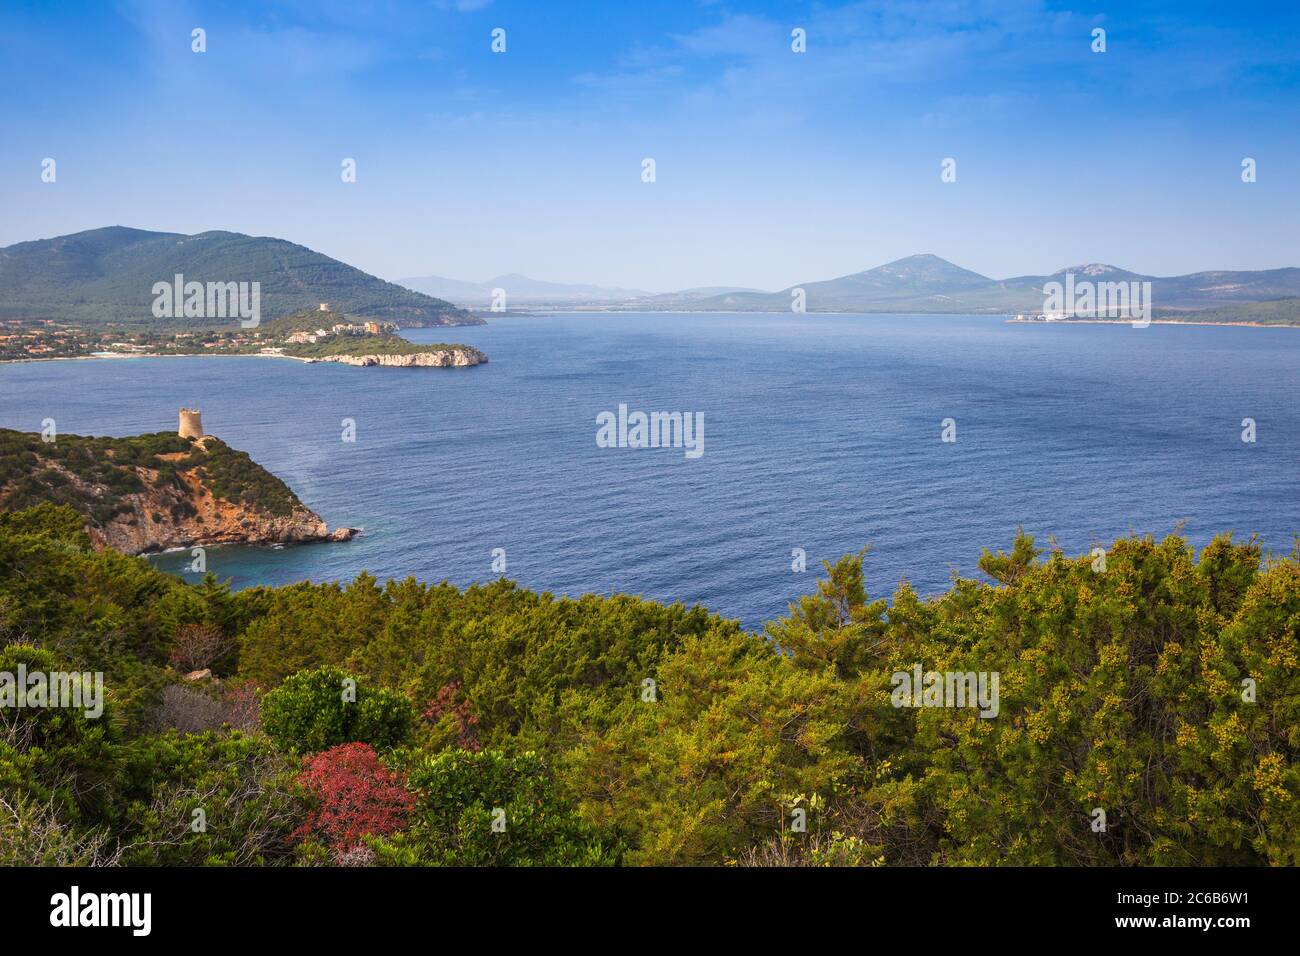 View towards Bollo Tower, Capo Caccia, Porto Conte National Park, Alghero, Sardinia, Italy, Mediterranean, Europe Stock Photo